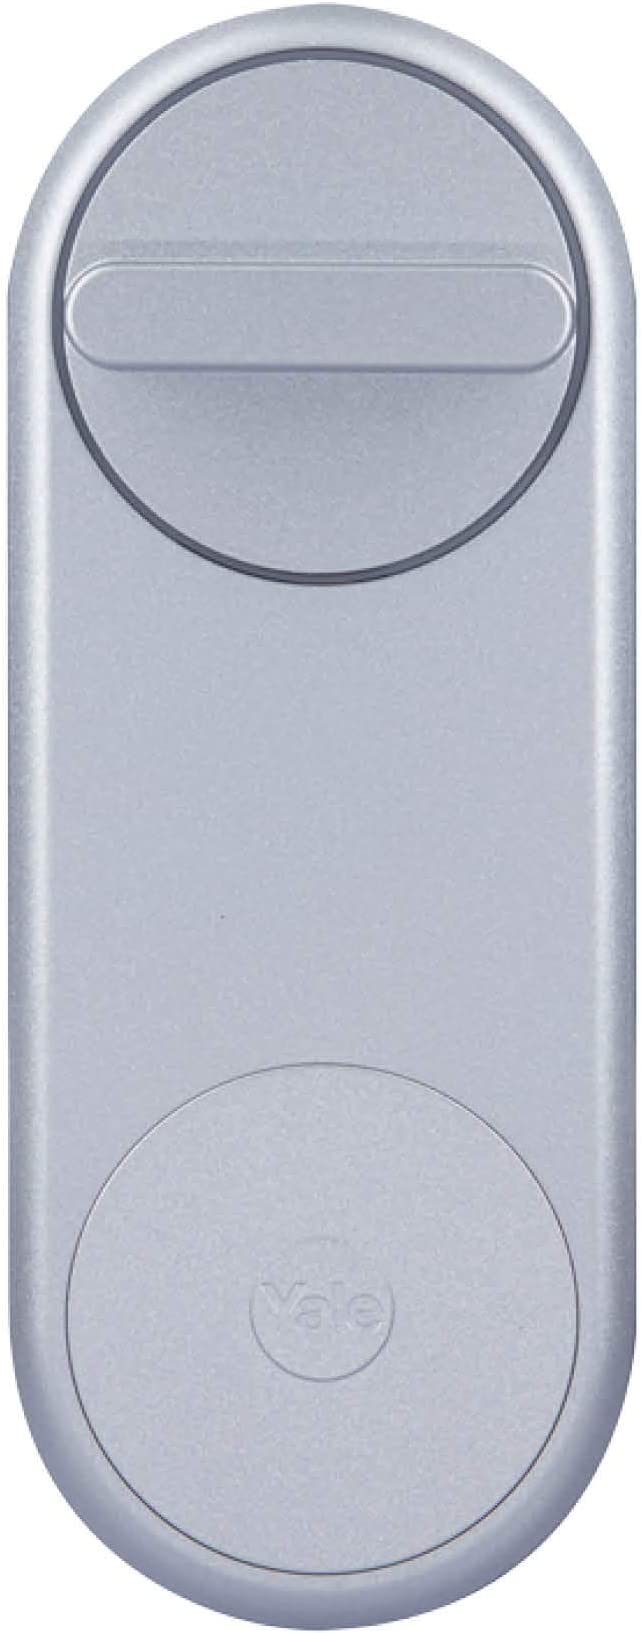 Yale 05/101200/SI - Linus Smart Lock - Silver - Keyless and Secure Door Lock